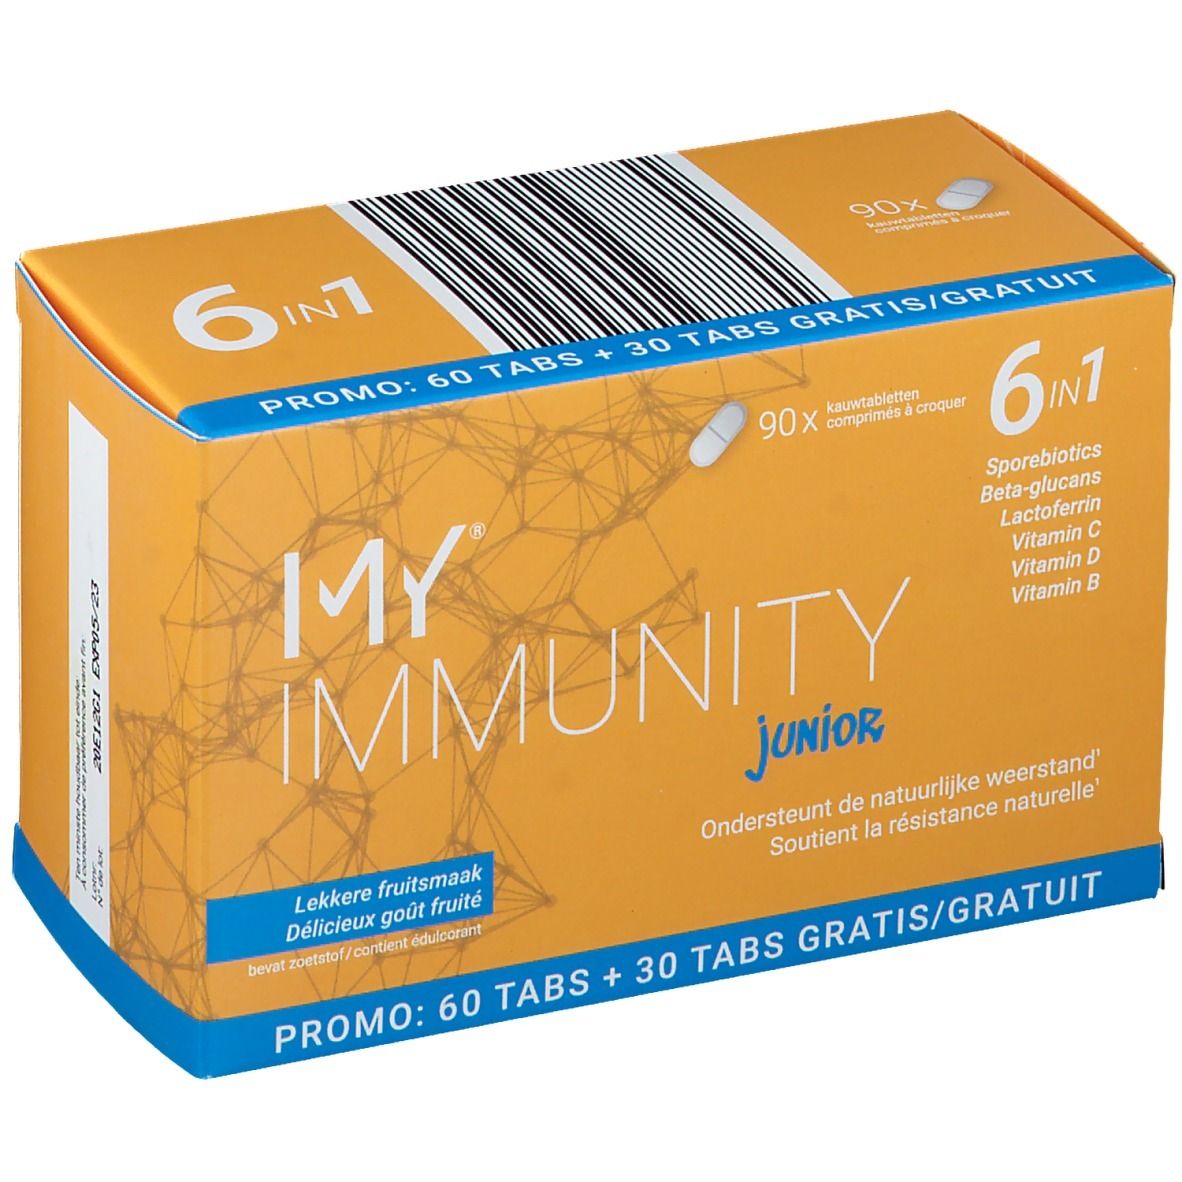 My® Immunity Junior